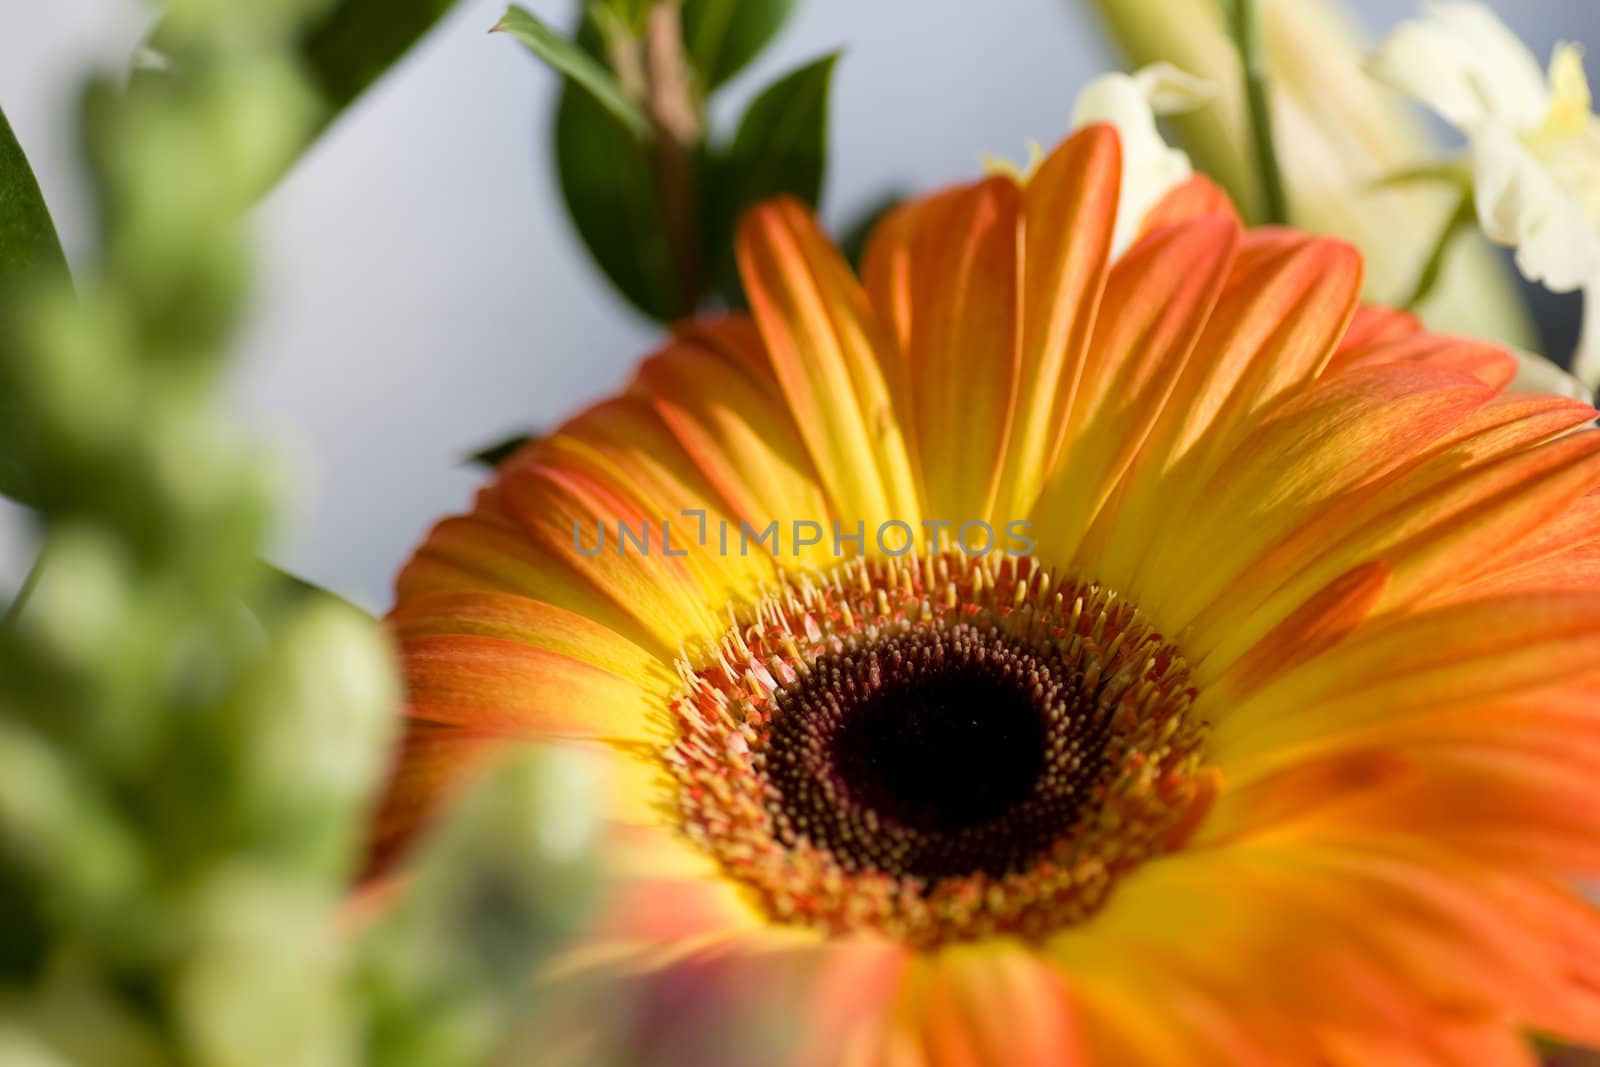 Closeup of a yellow orange daisy, from a flower arrangement.